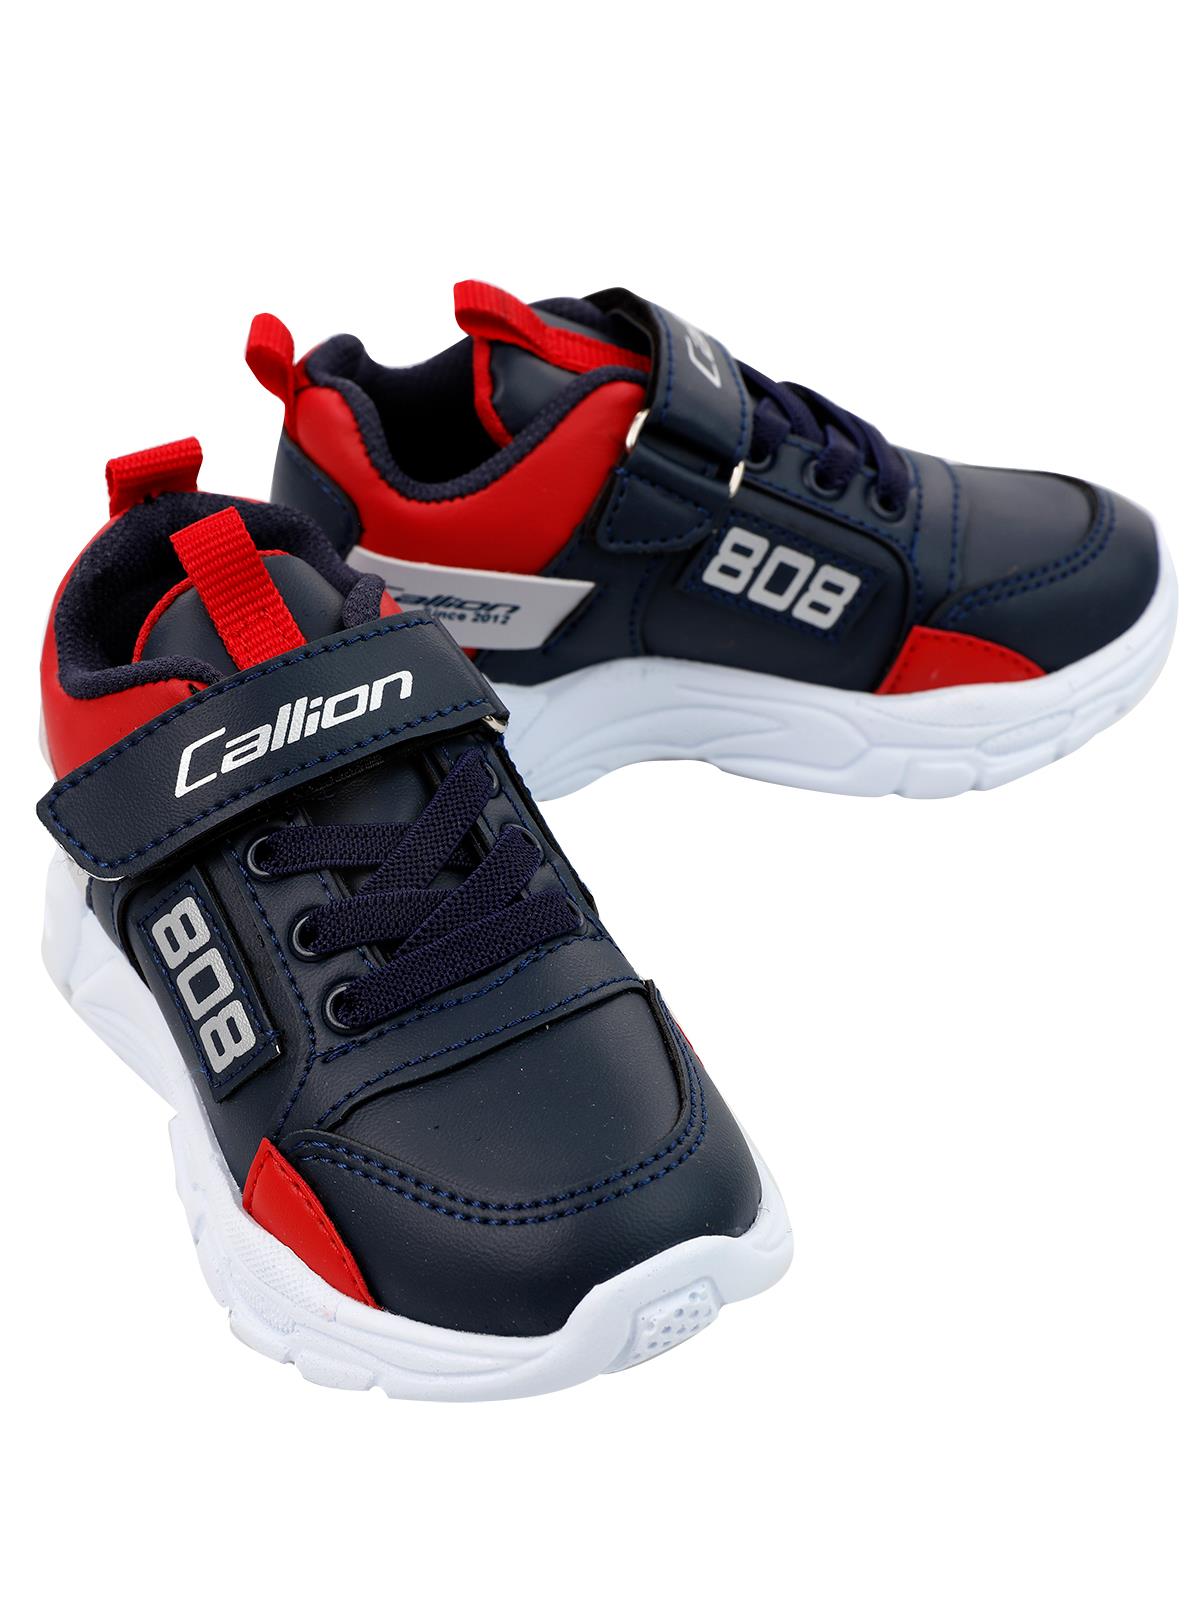 Callion Erkek Çocuk Spor Ayakkabı 31-35 Numara Lacivert-Kırmızı